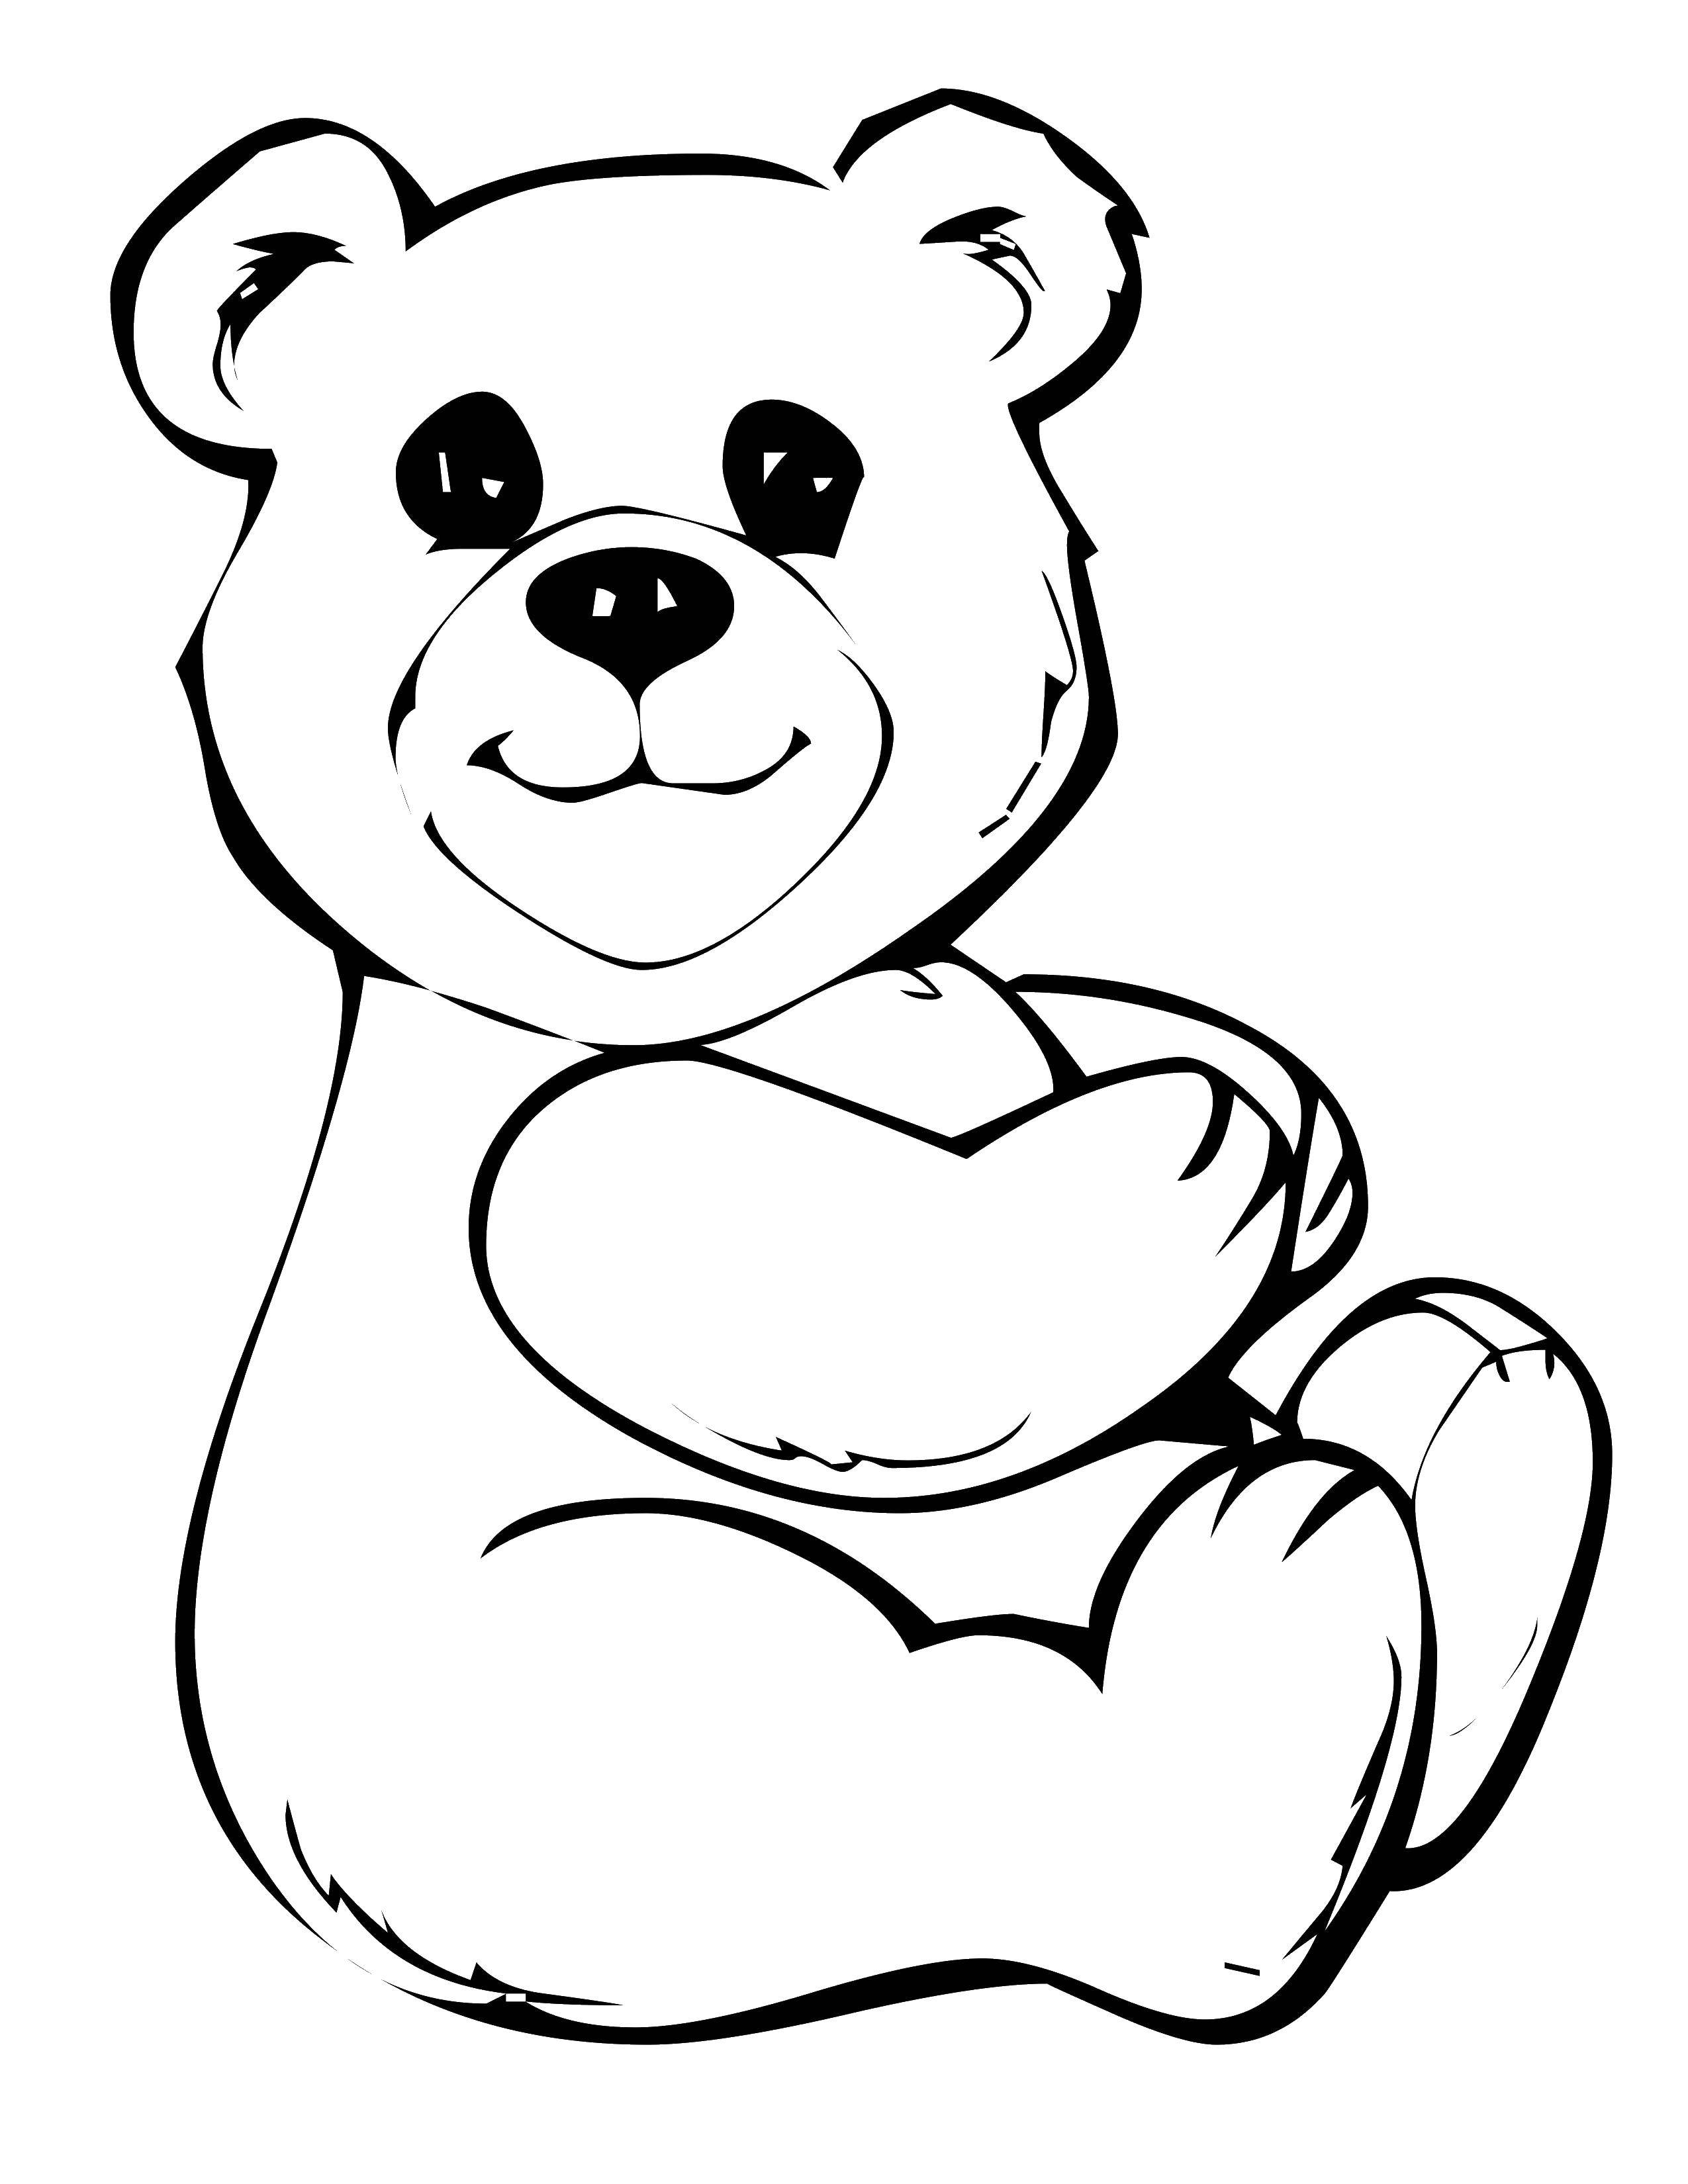 Распечатка медведя. Раскраска. Медвежонок. Раскраска "мишки". Мишка раскраска для малышей. Медвежонок раскраска для детей.